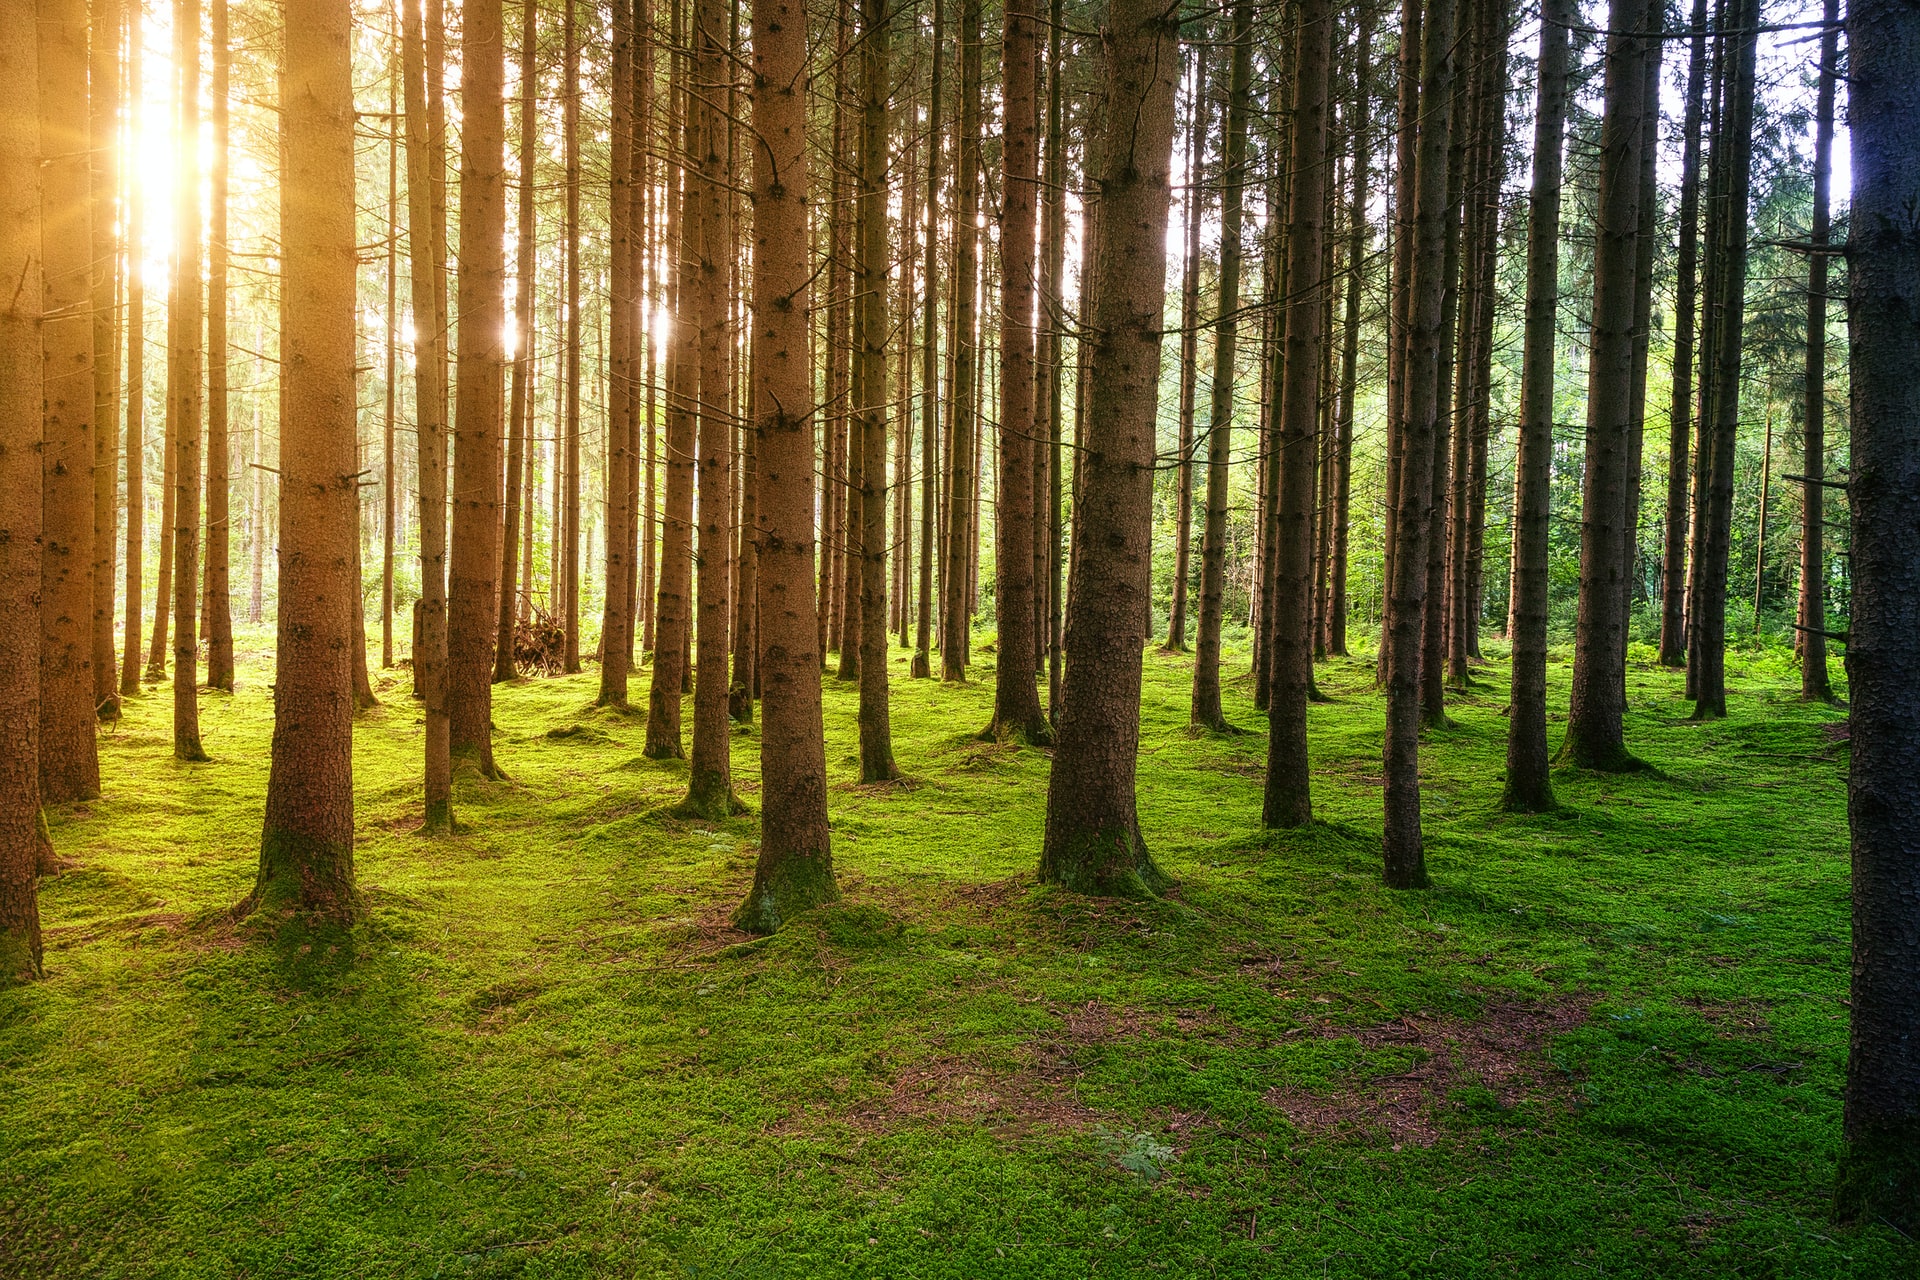 Je lepšie sadiť stromy alebo nechať lesy opäť vyrásť prirodzene? Výsadba nemusí byť vždy najlepším riešením